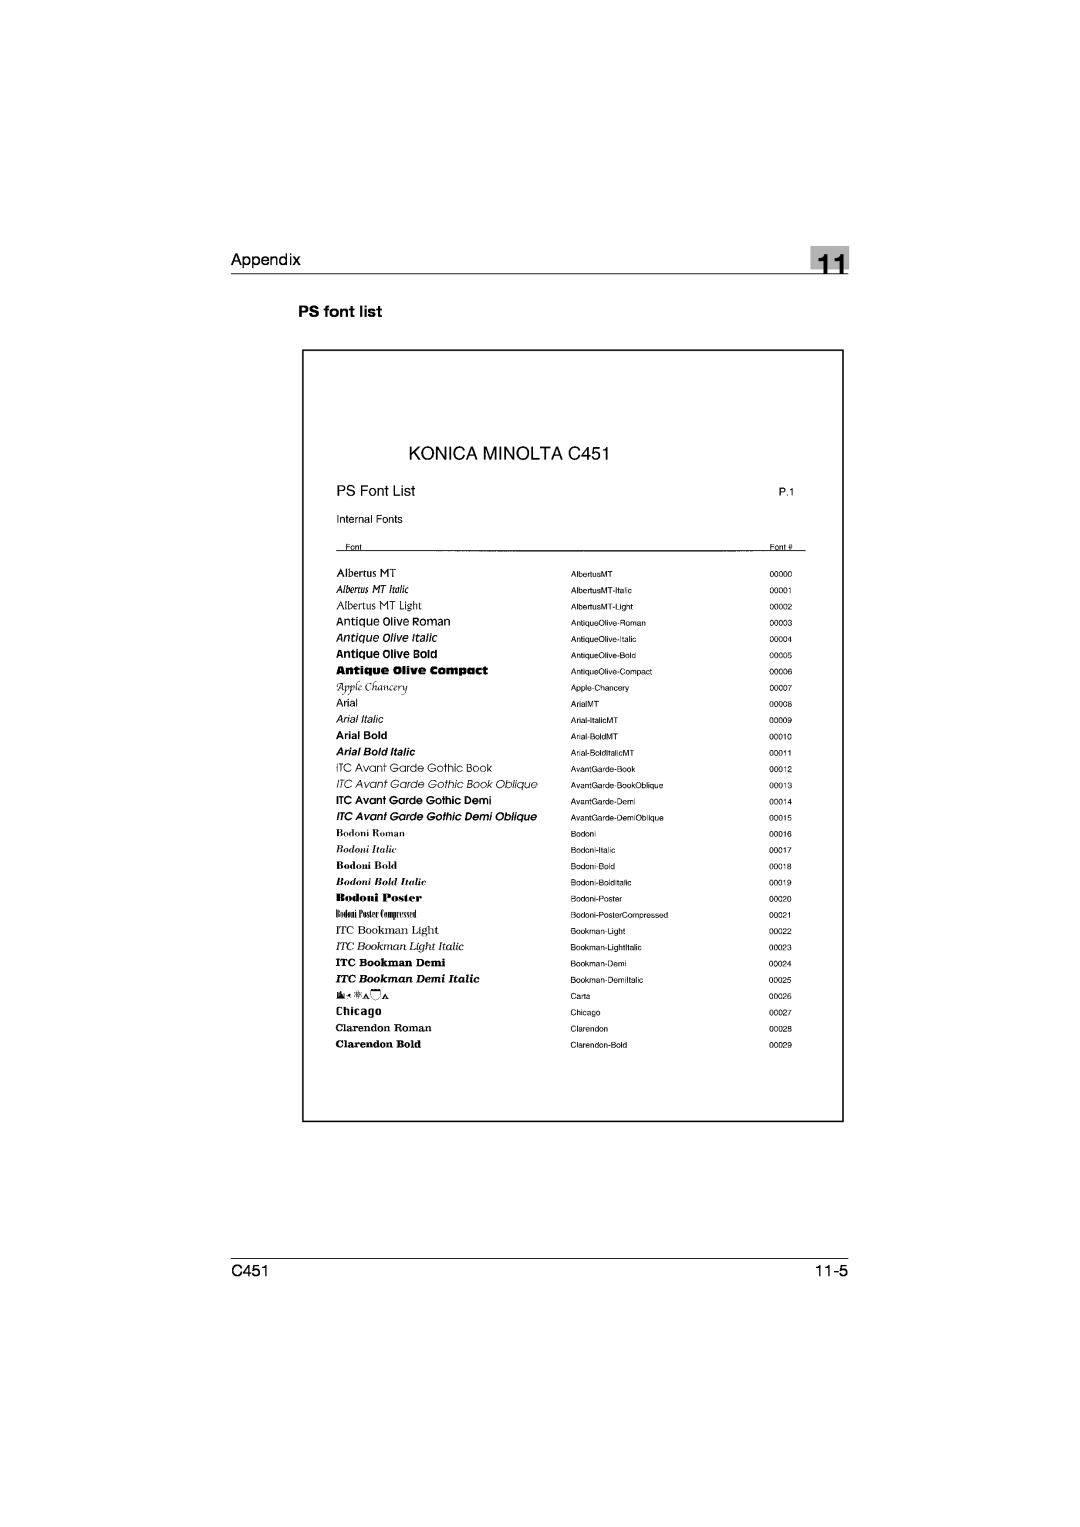 Konica Minolta C451 manual Appendix, PS font list, 11-5 